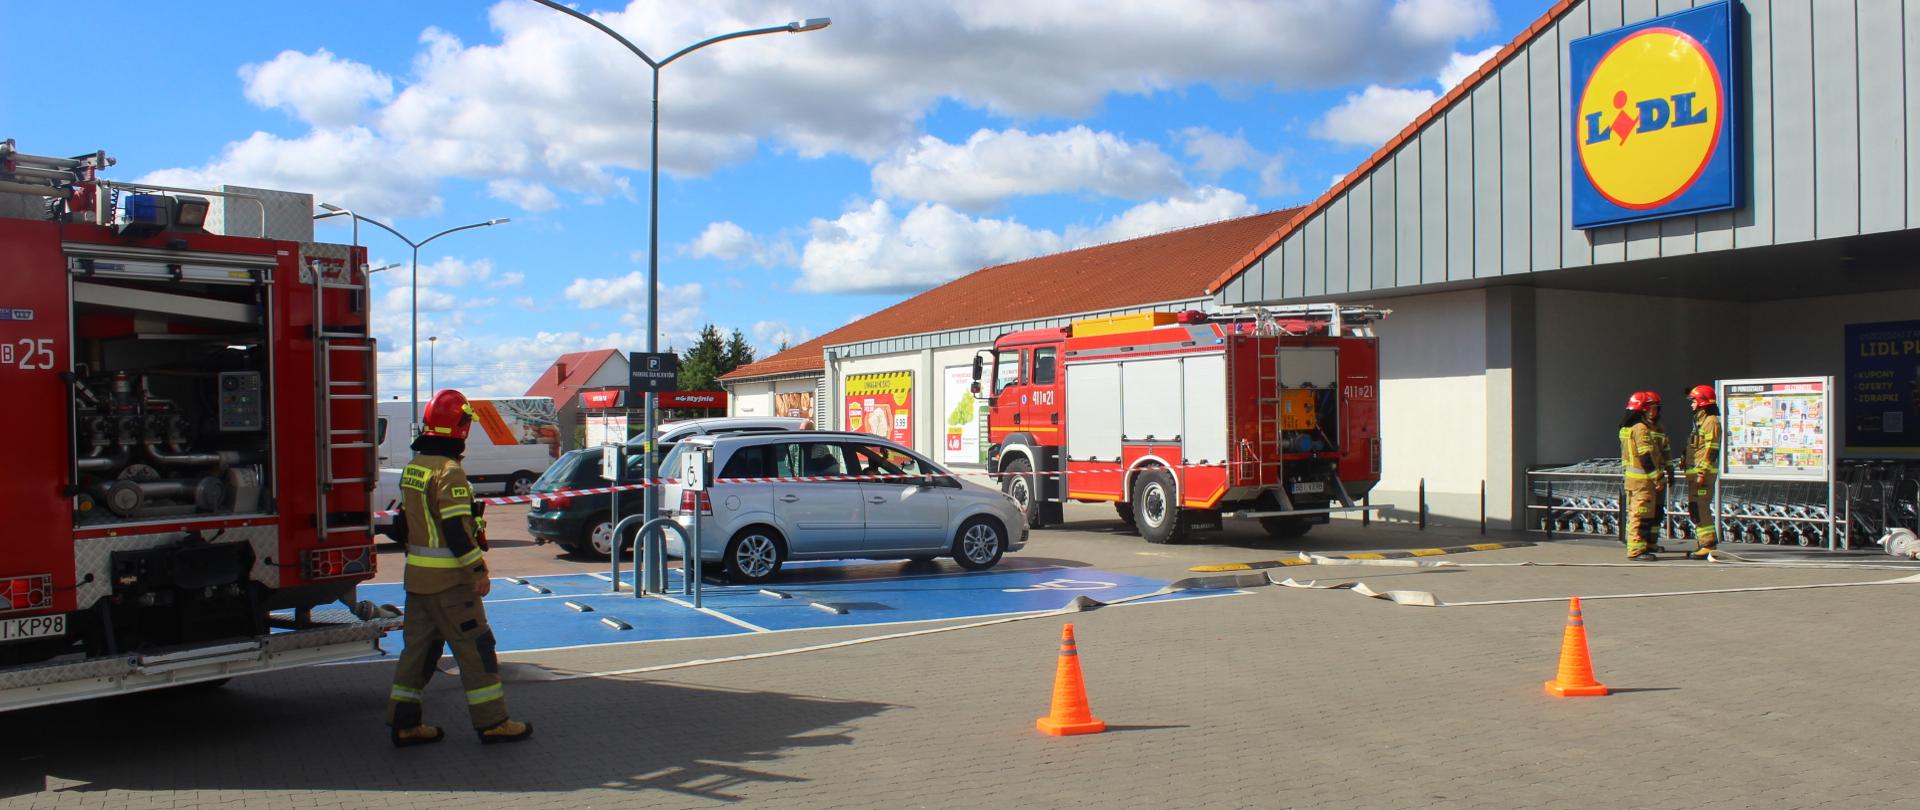 Zdjęcie przedstawia strażaków i dwa samochody ratowniczo-gaśnicze przed budynkiem sklepu lidl 